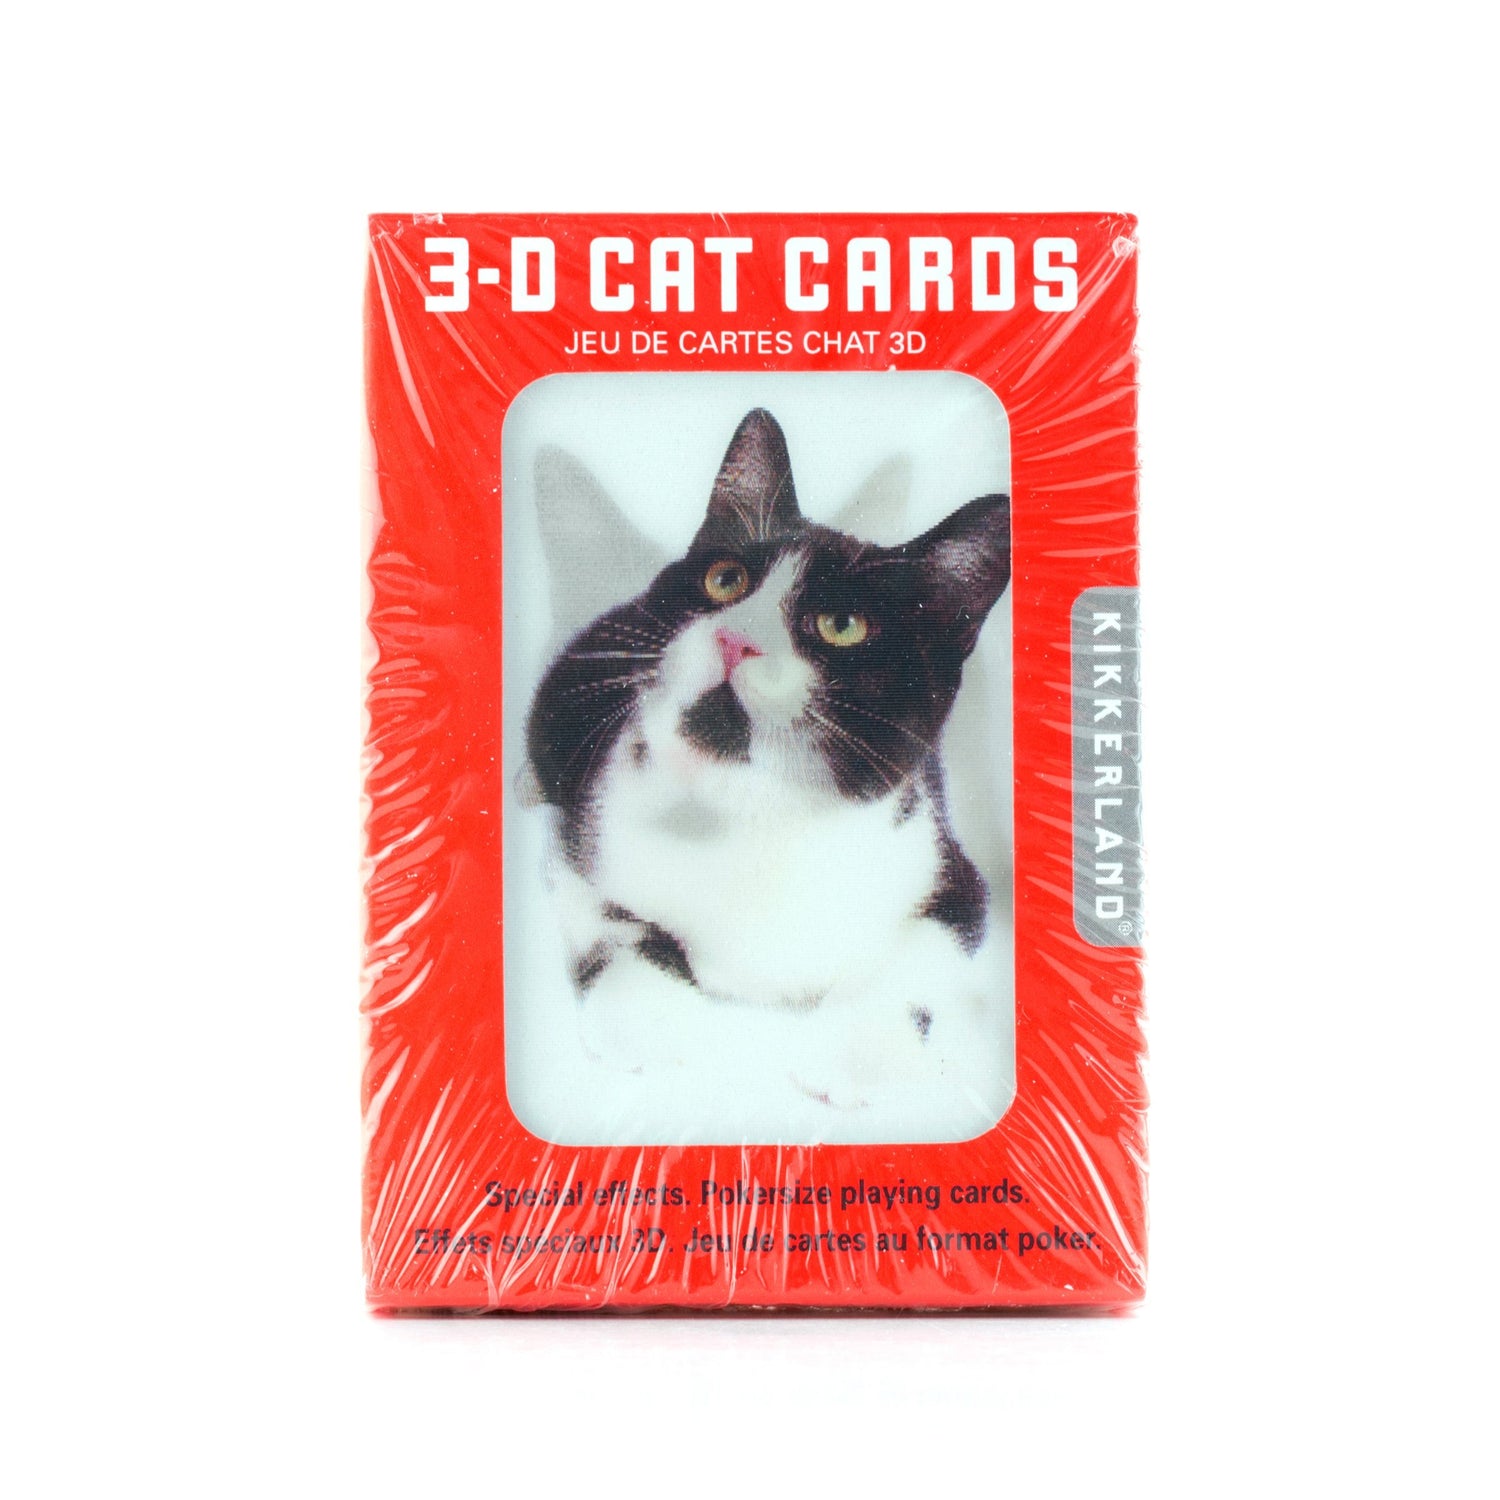 Jugar a las cartas gatos 3D